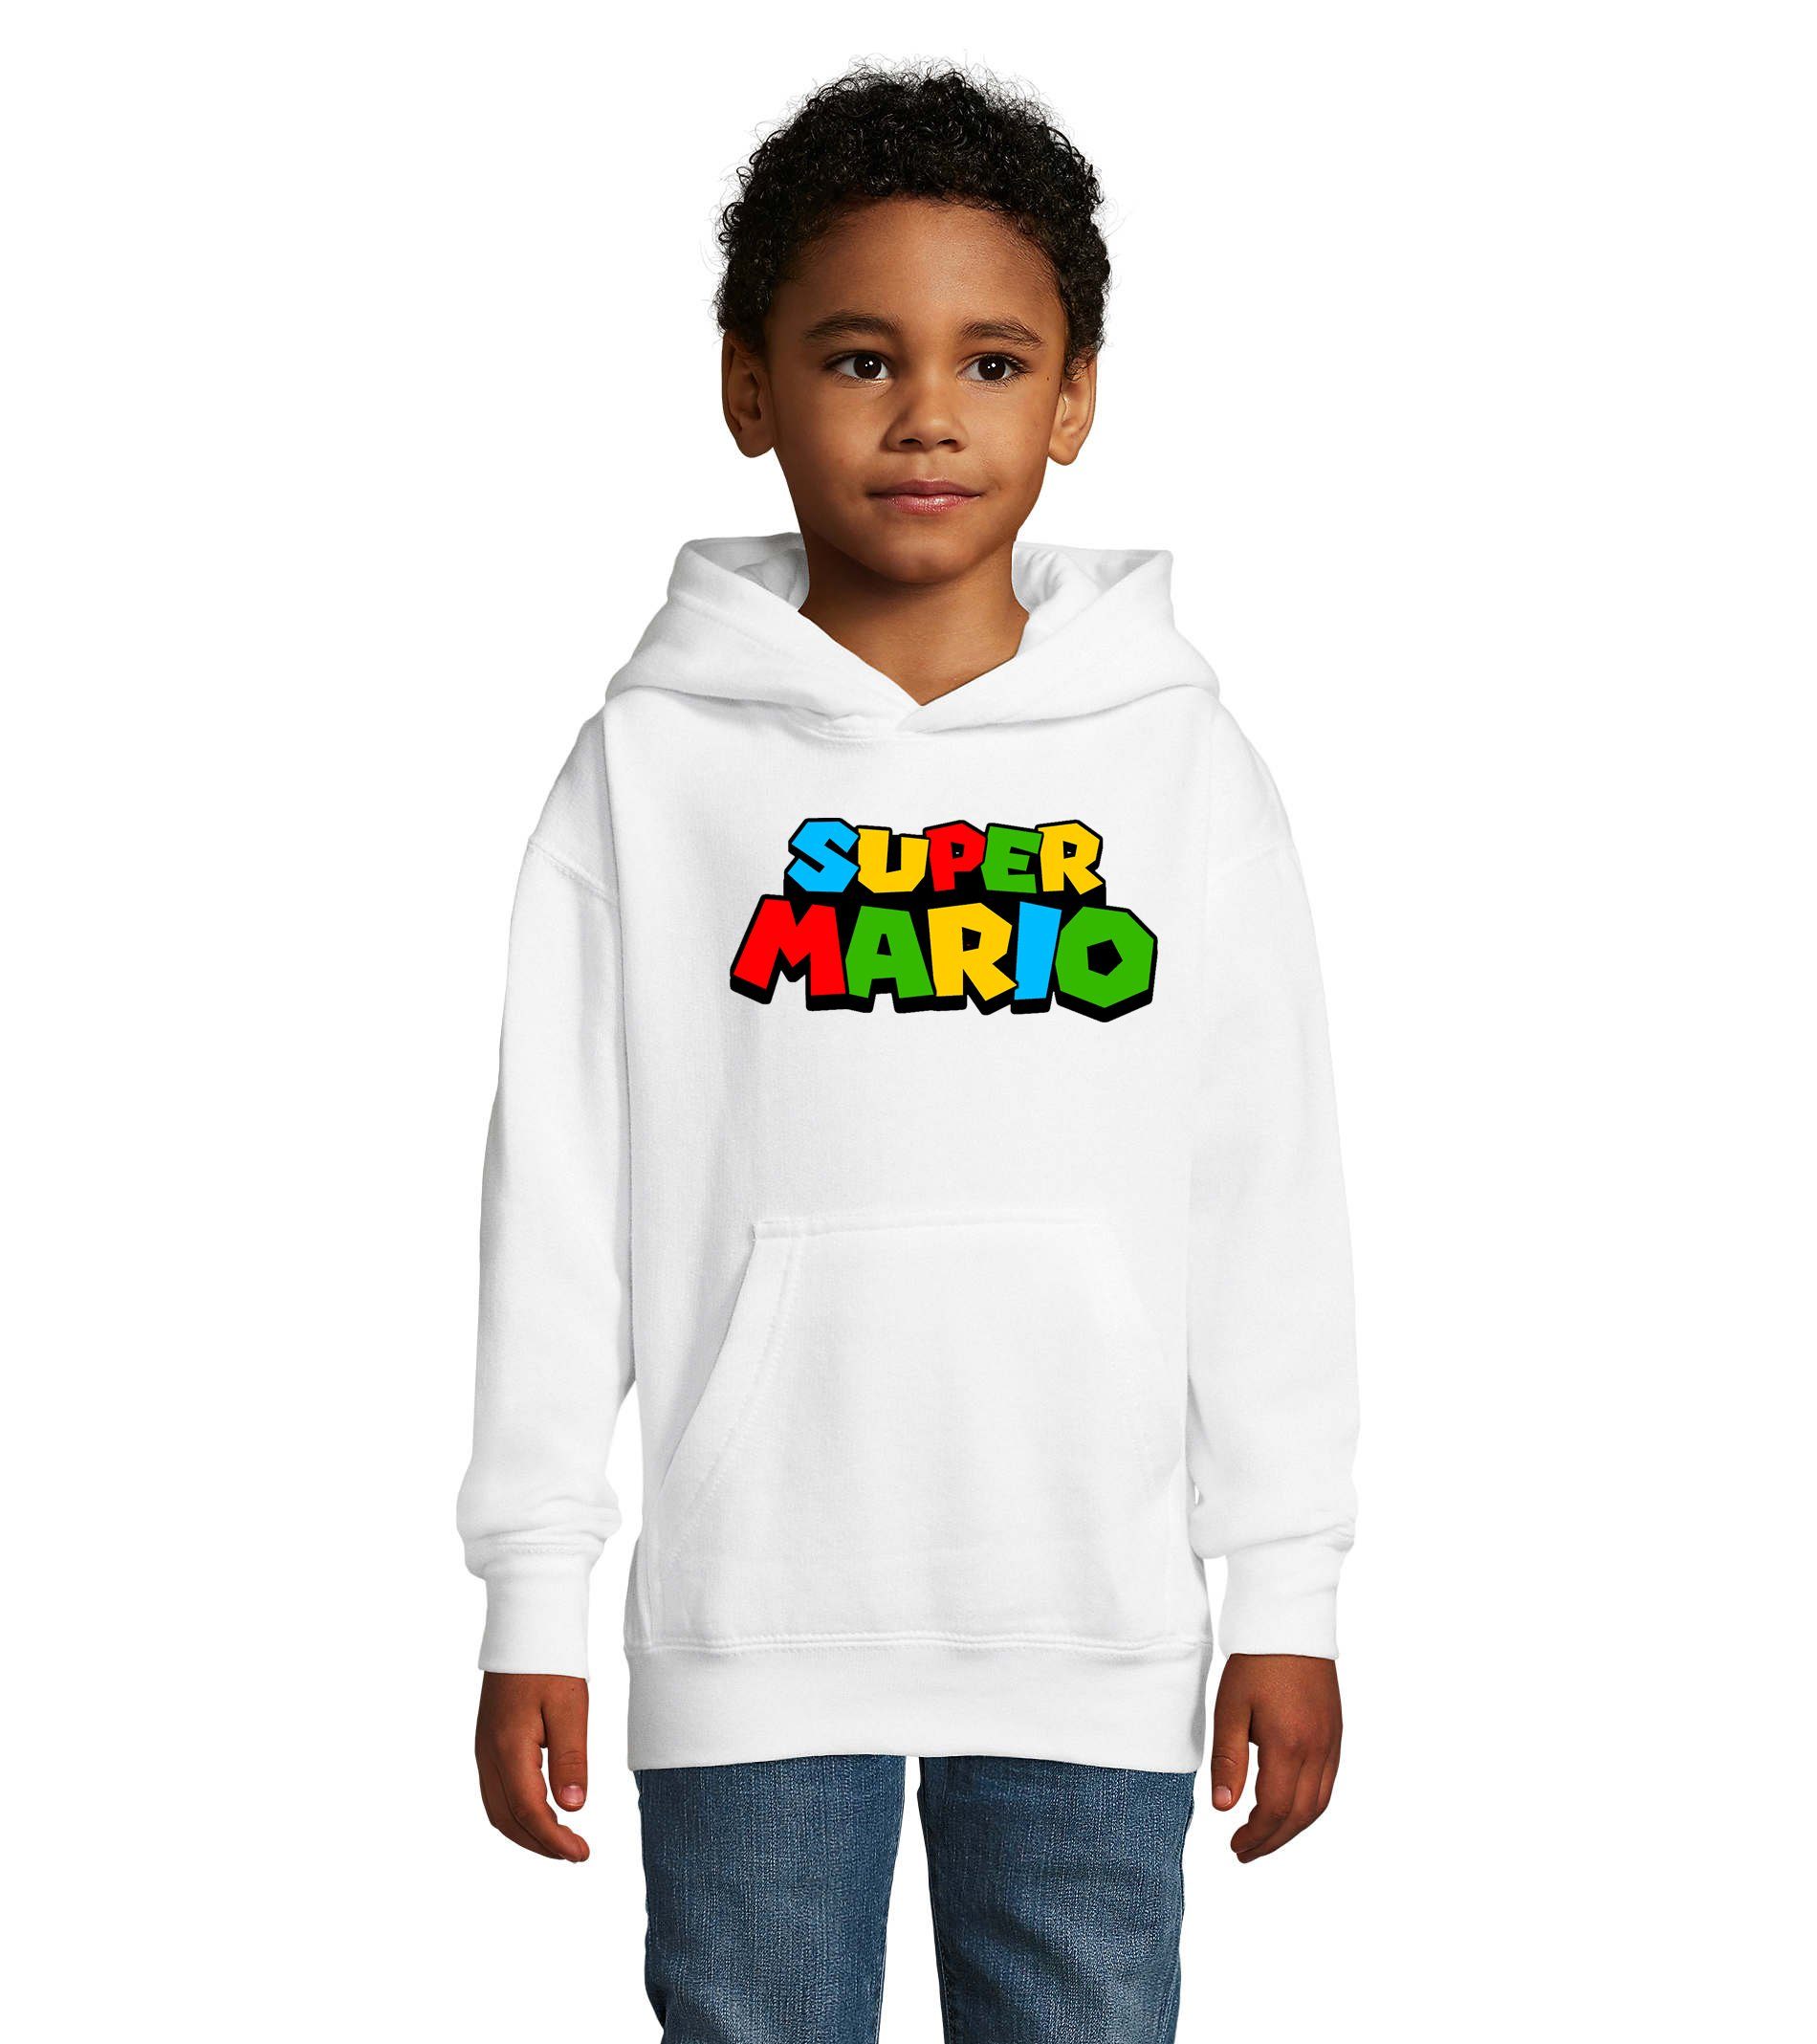 Blondie & Kapuze Gamer Spiele Konsole Mario Nintendo Kinder Super Gaming Weiss Brownie Hoodie mit